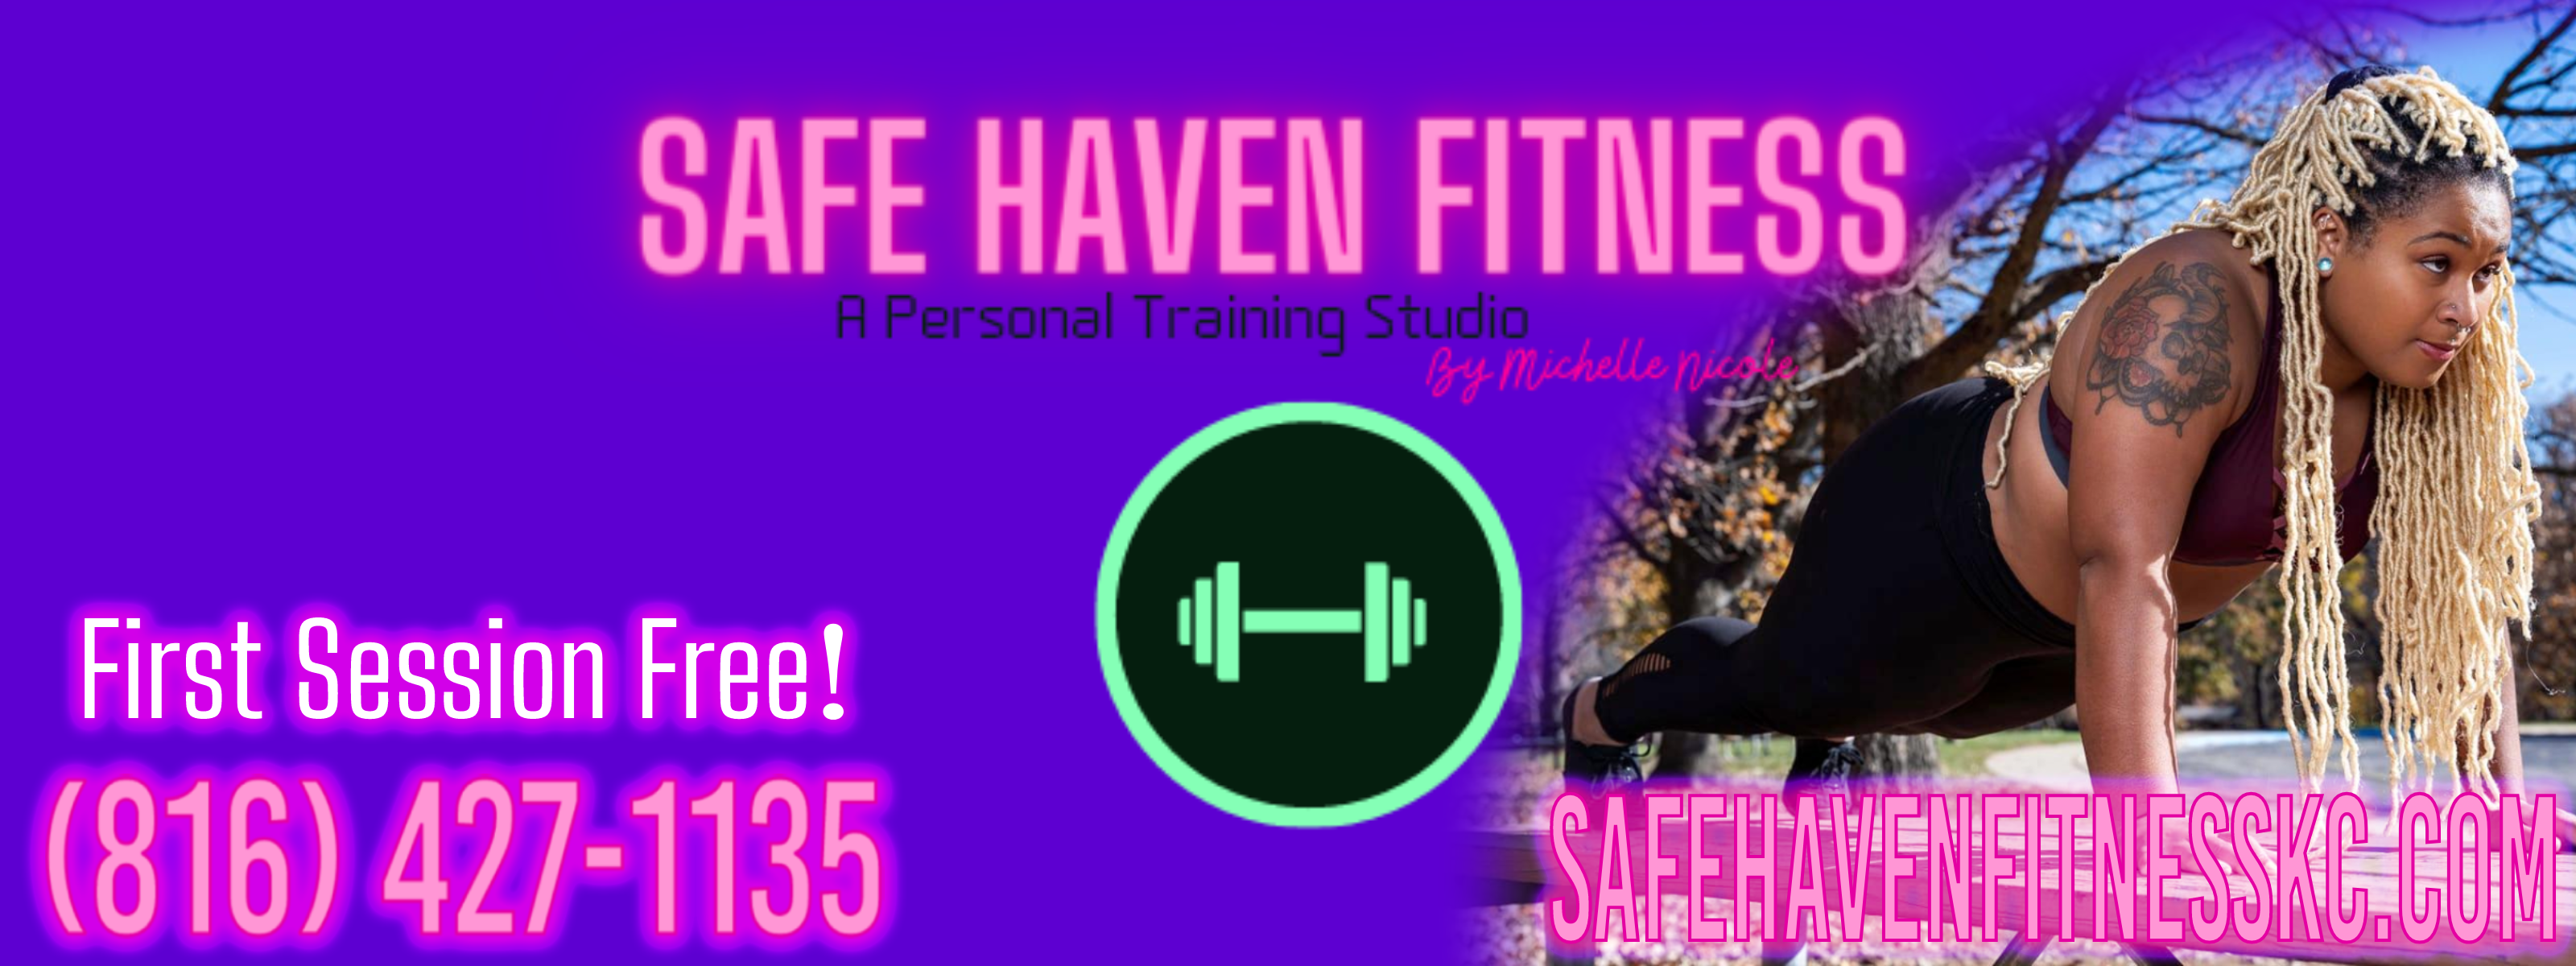 safe haven fitness kc